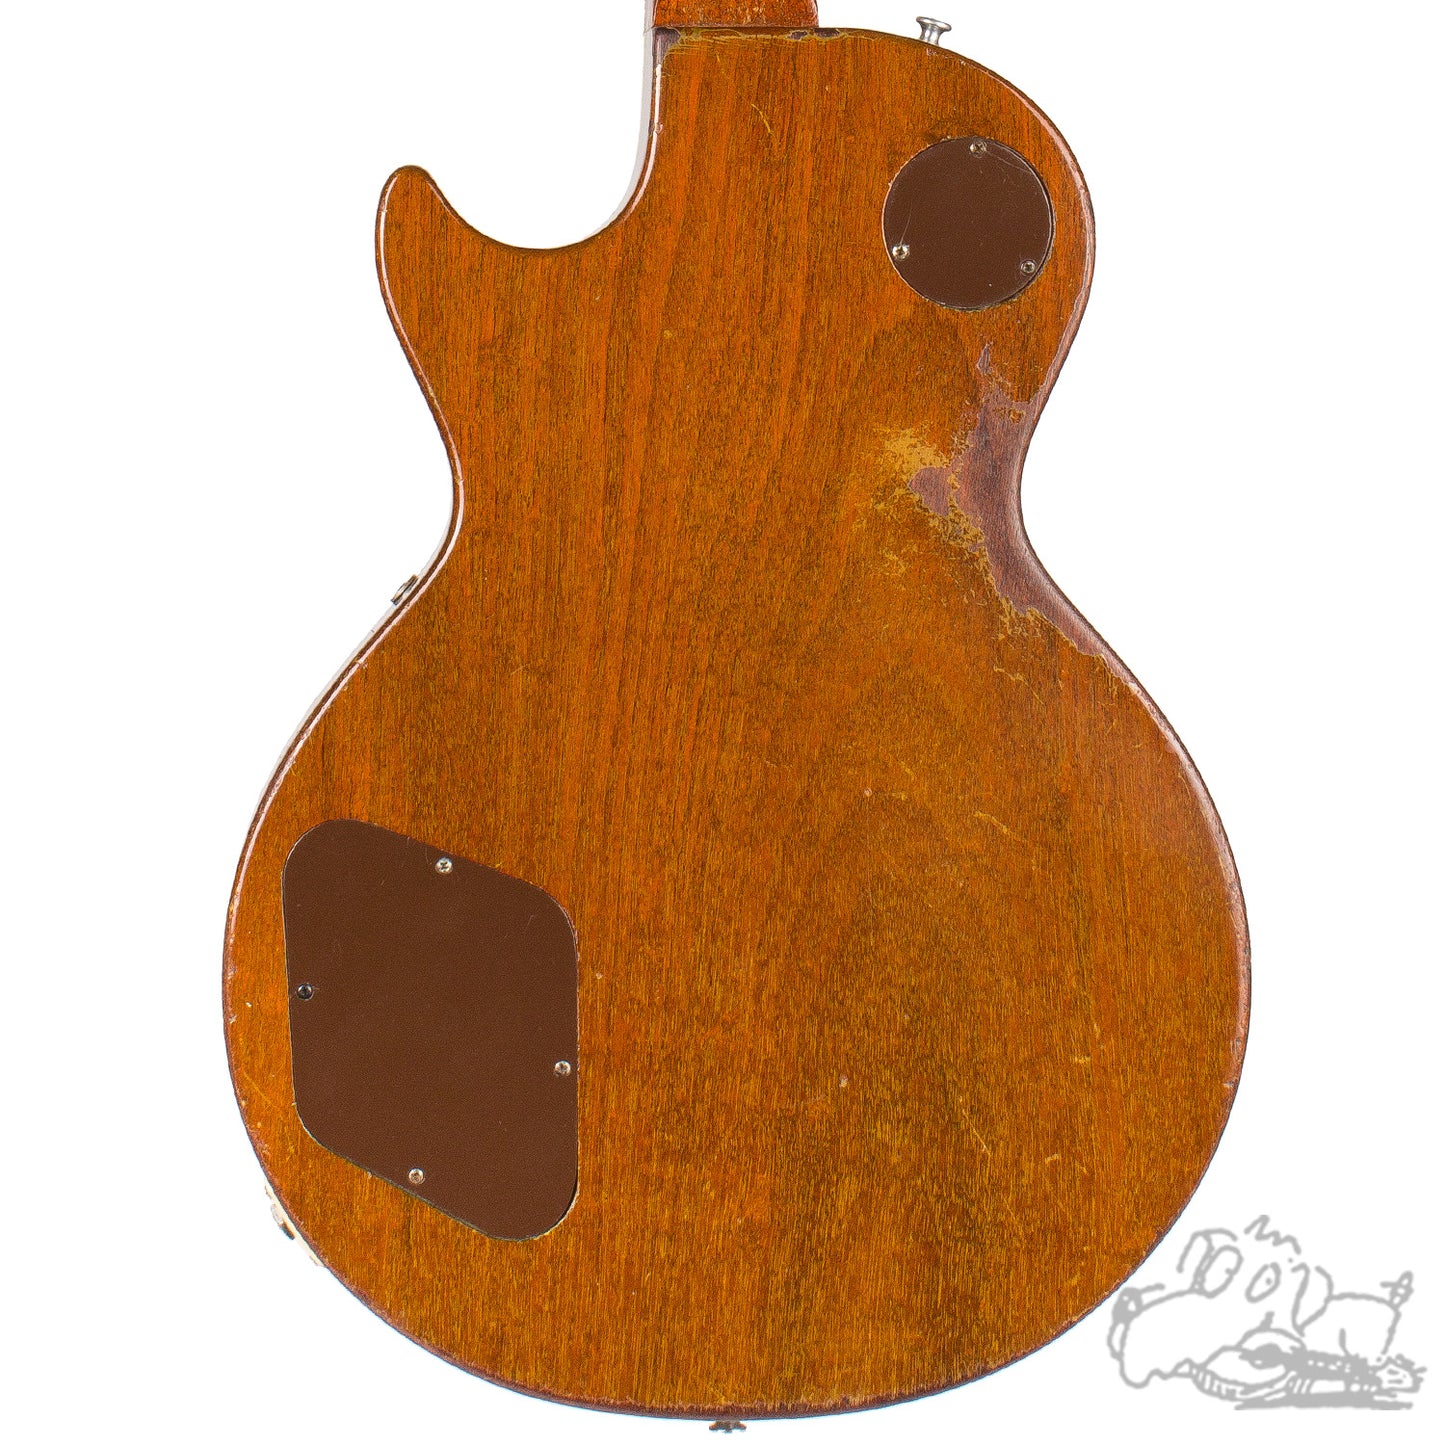 1968 Gibson Les Paul Burst Conversion